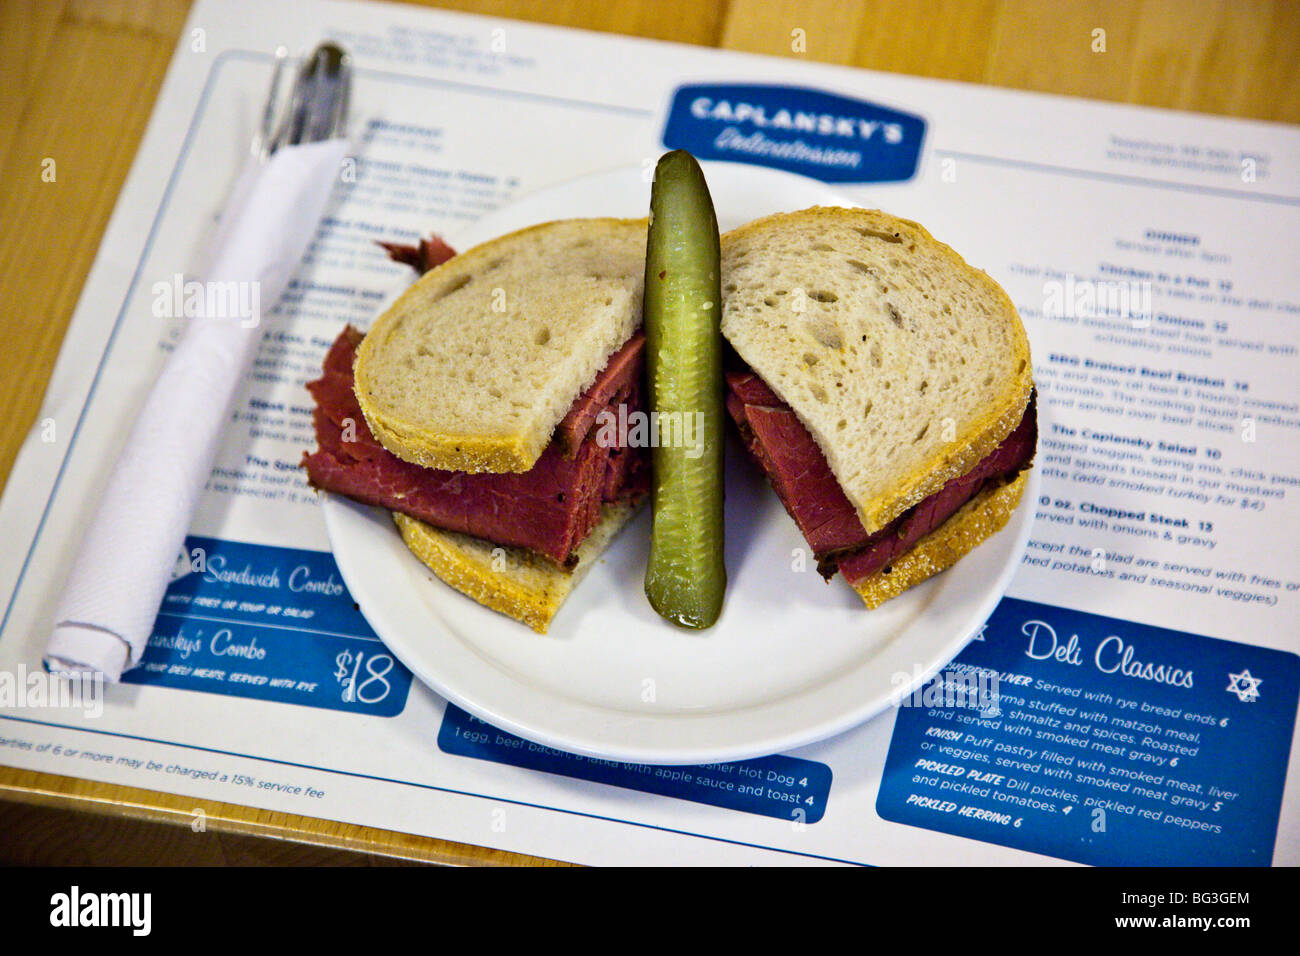 Geräuchertem Fleisch Sandwich am Caplansky Feinkost in Toronto Kanada Stockfoto